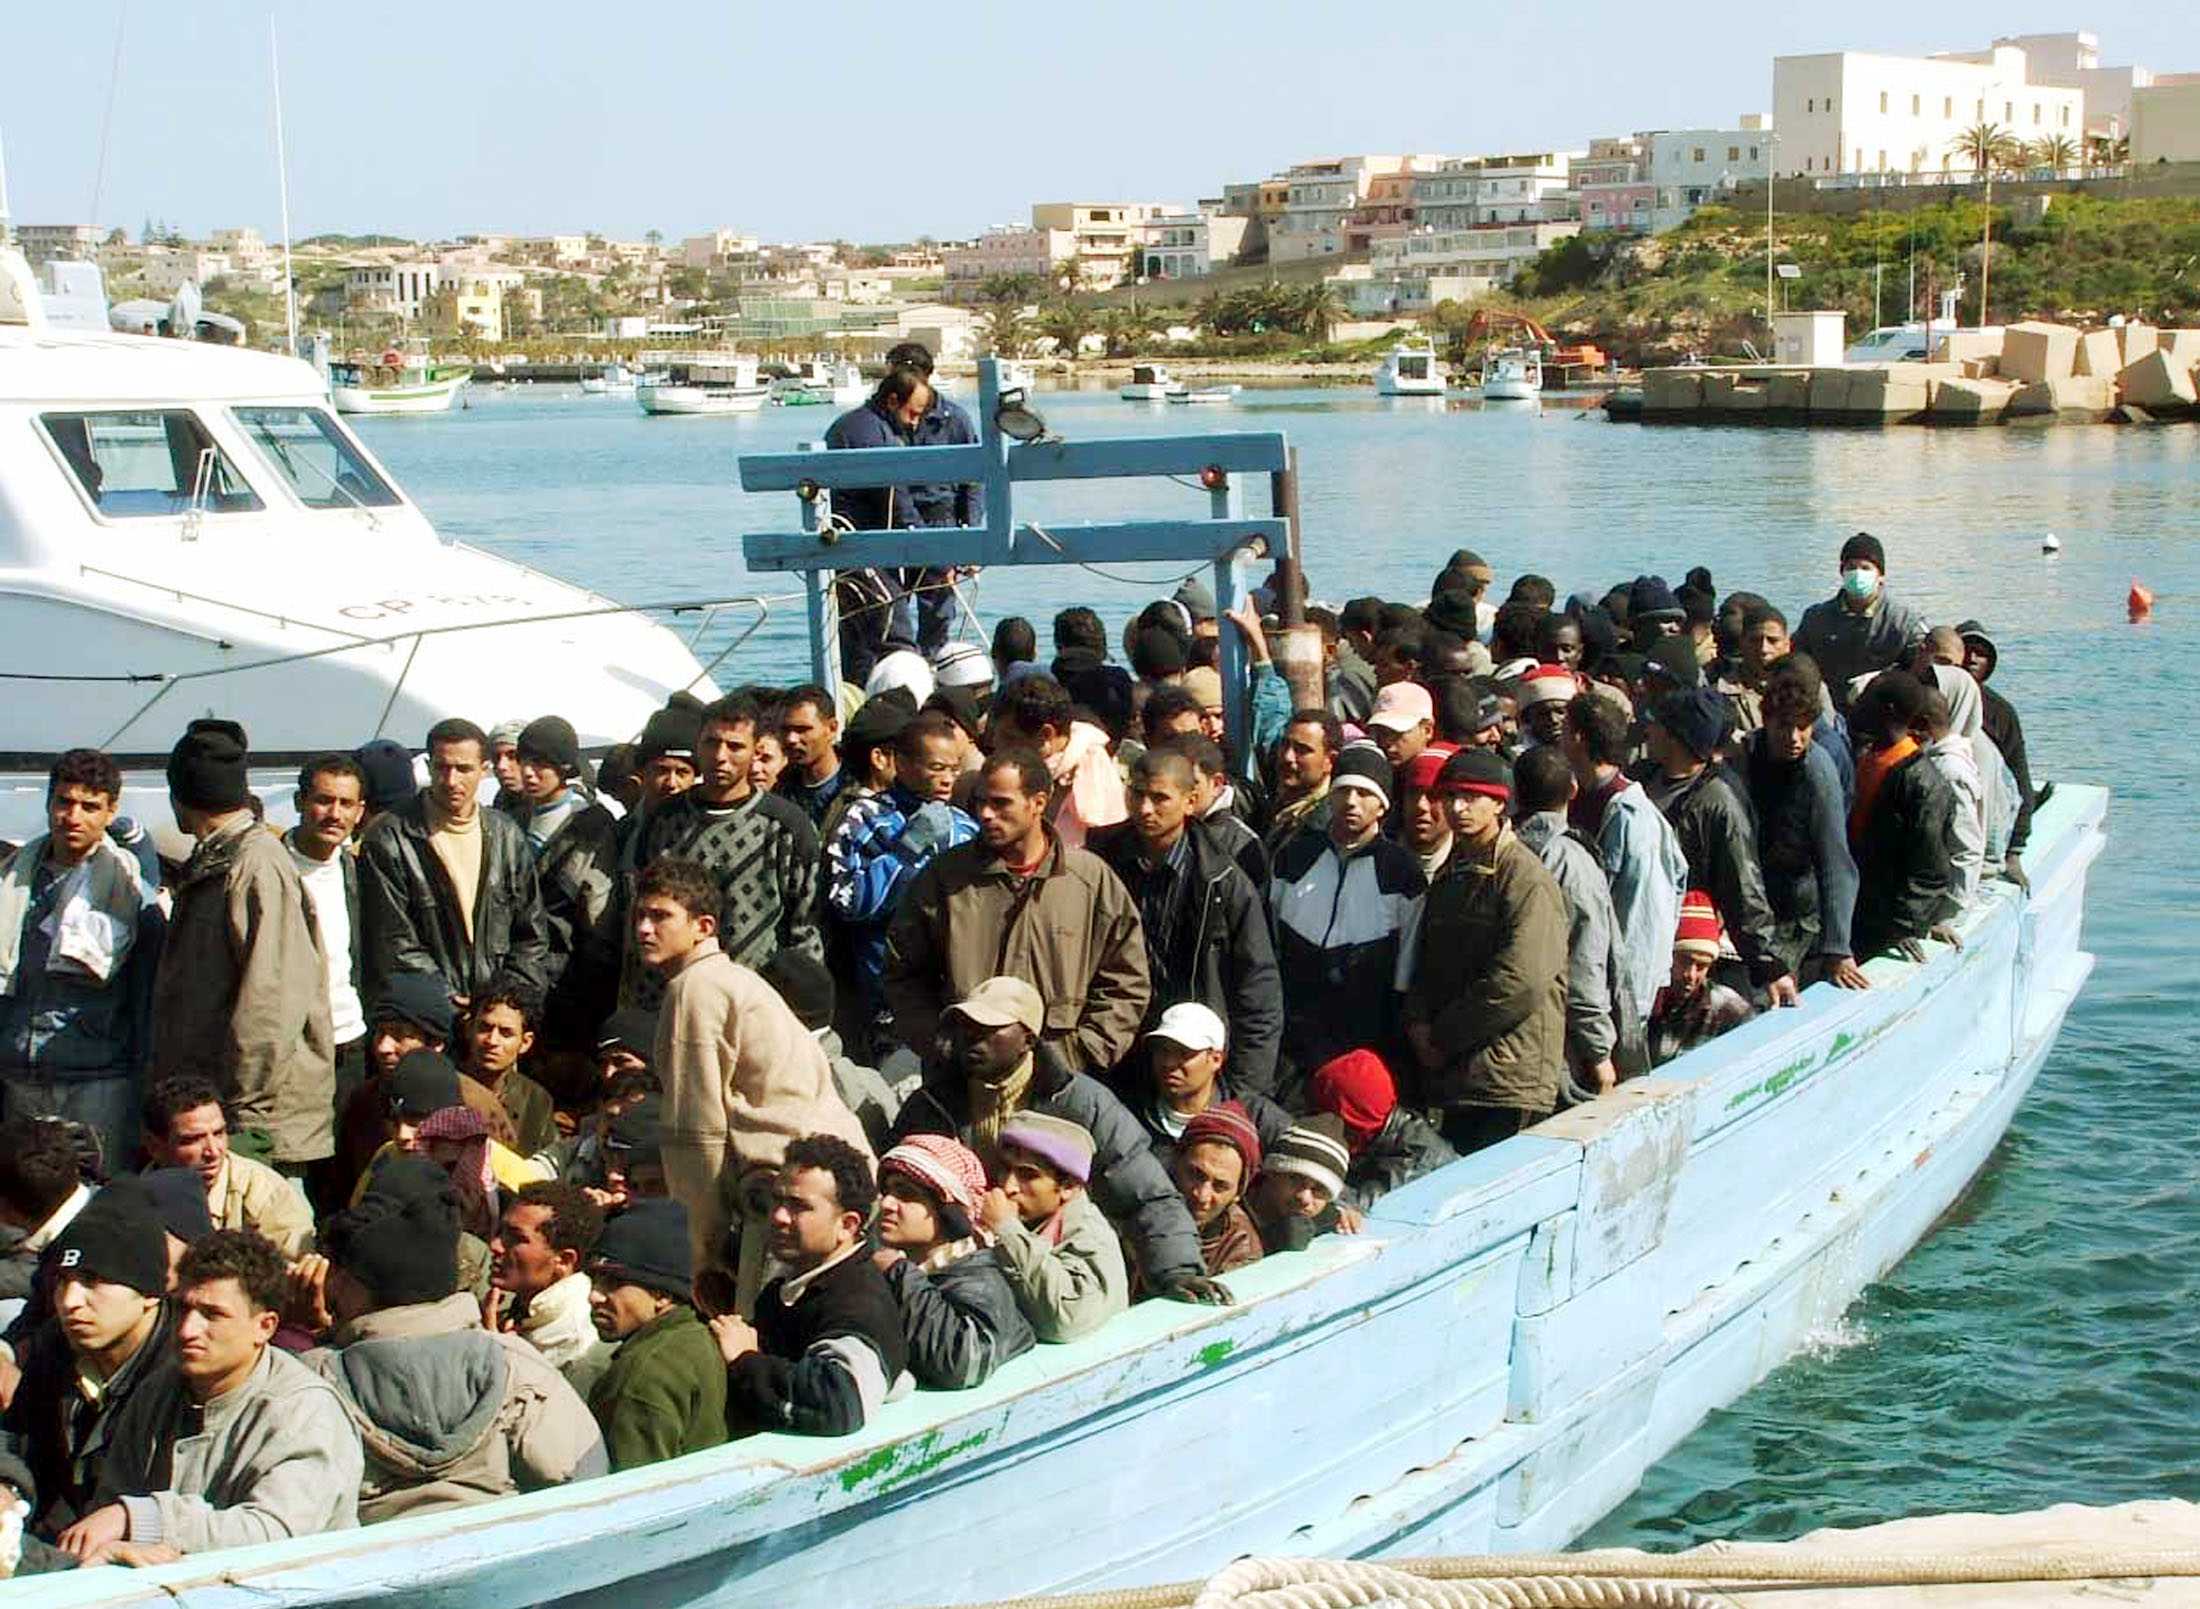 Immigrazione, nuovi arrivi. Lampedusa al collasso e la UE conferma assistenza finanziaria